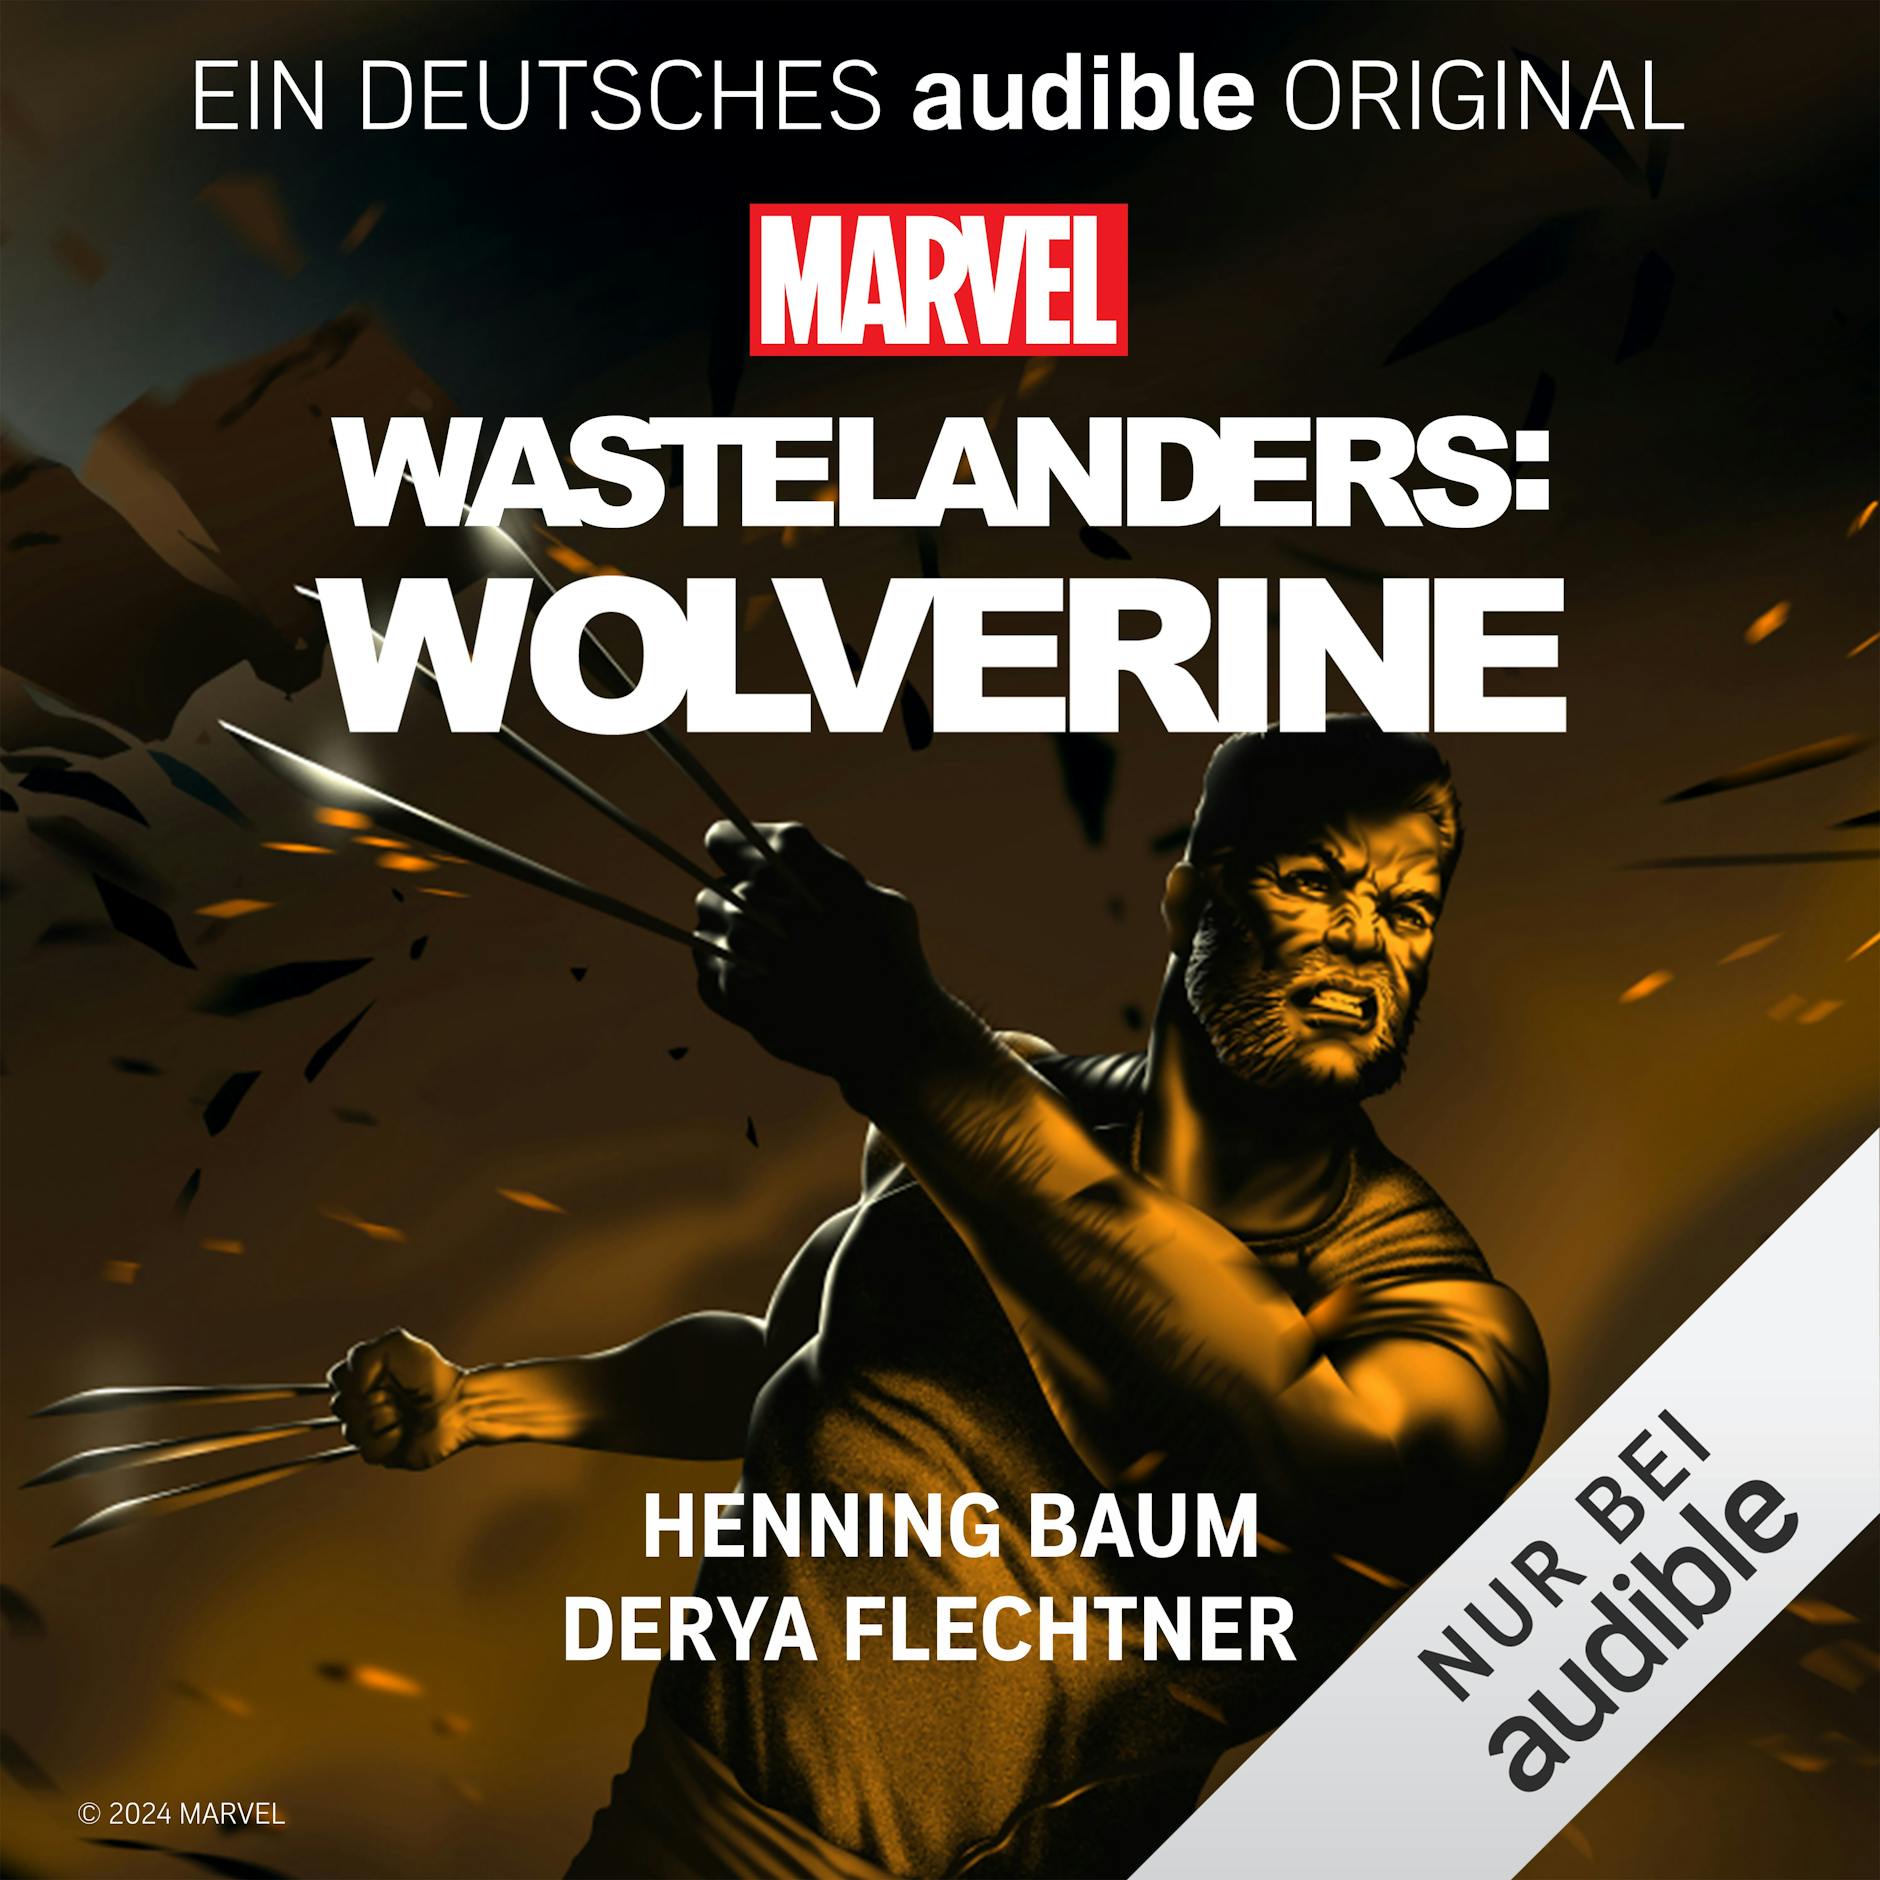 Mit Wolverine kann sich Henning Baum auch körperlich identifizieren. 